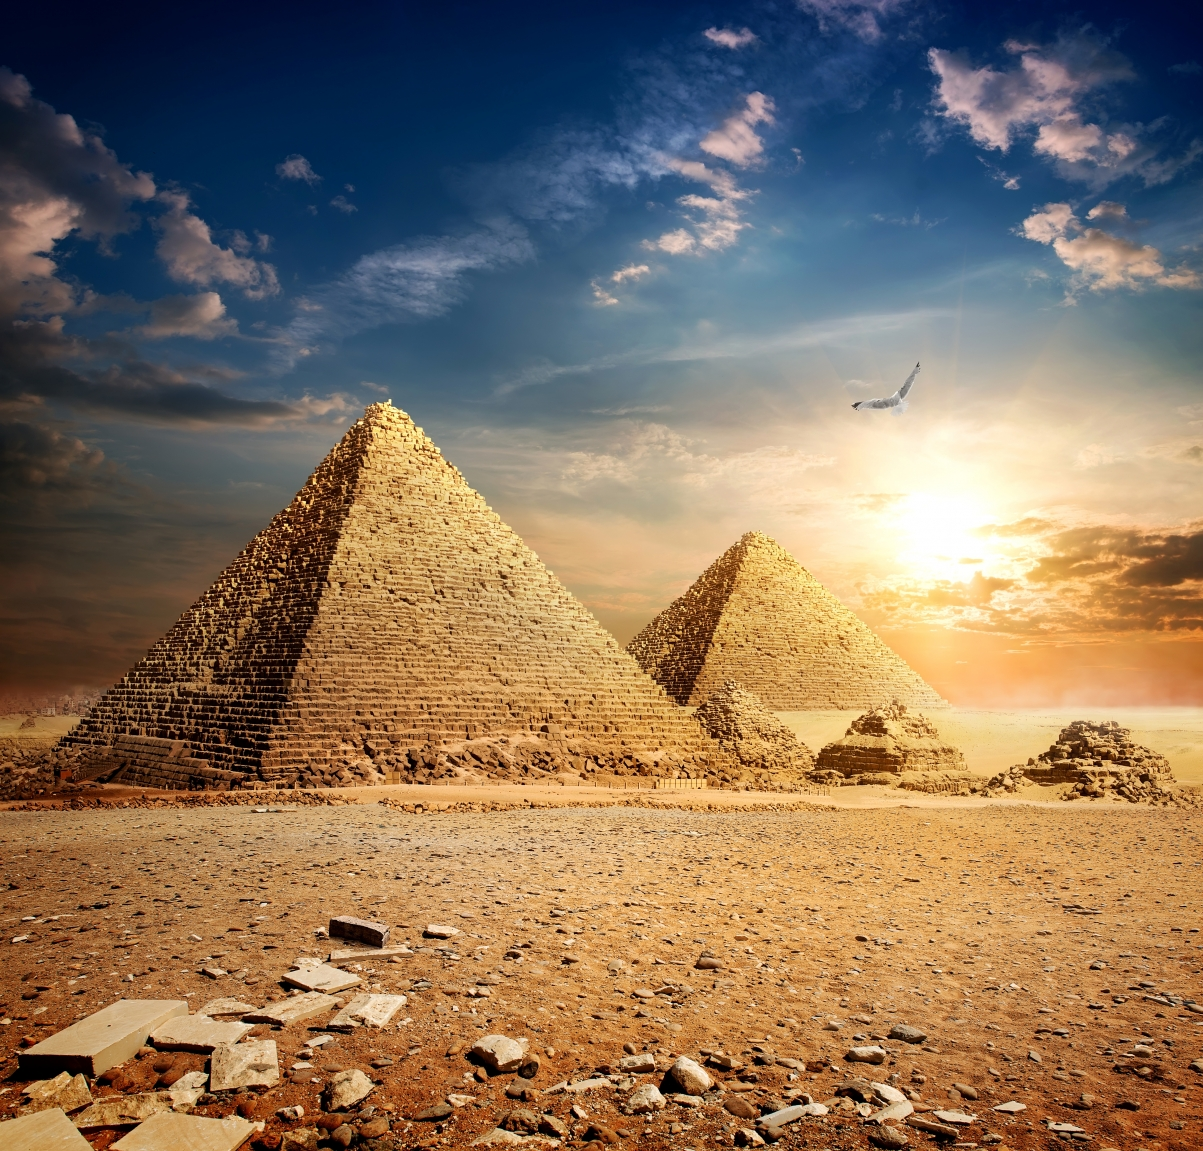 ‘~天空 太阳 云彩 鸟 沙漠 埃及金字塔4K风景图片 4k美丽的小姐姐超清桌面桌面背景’ 的图片